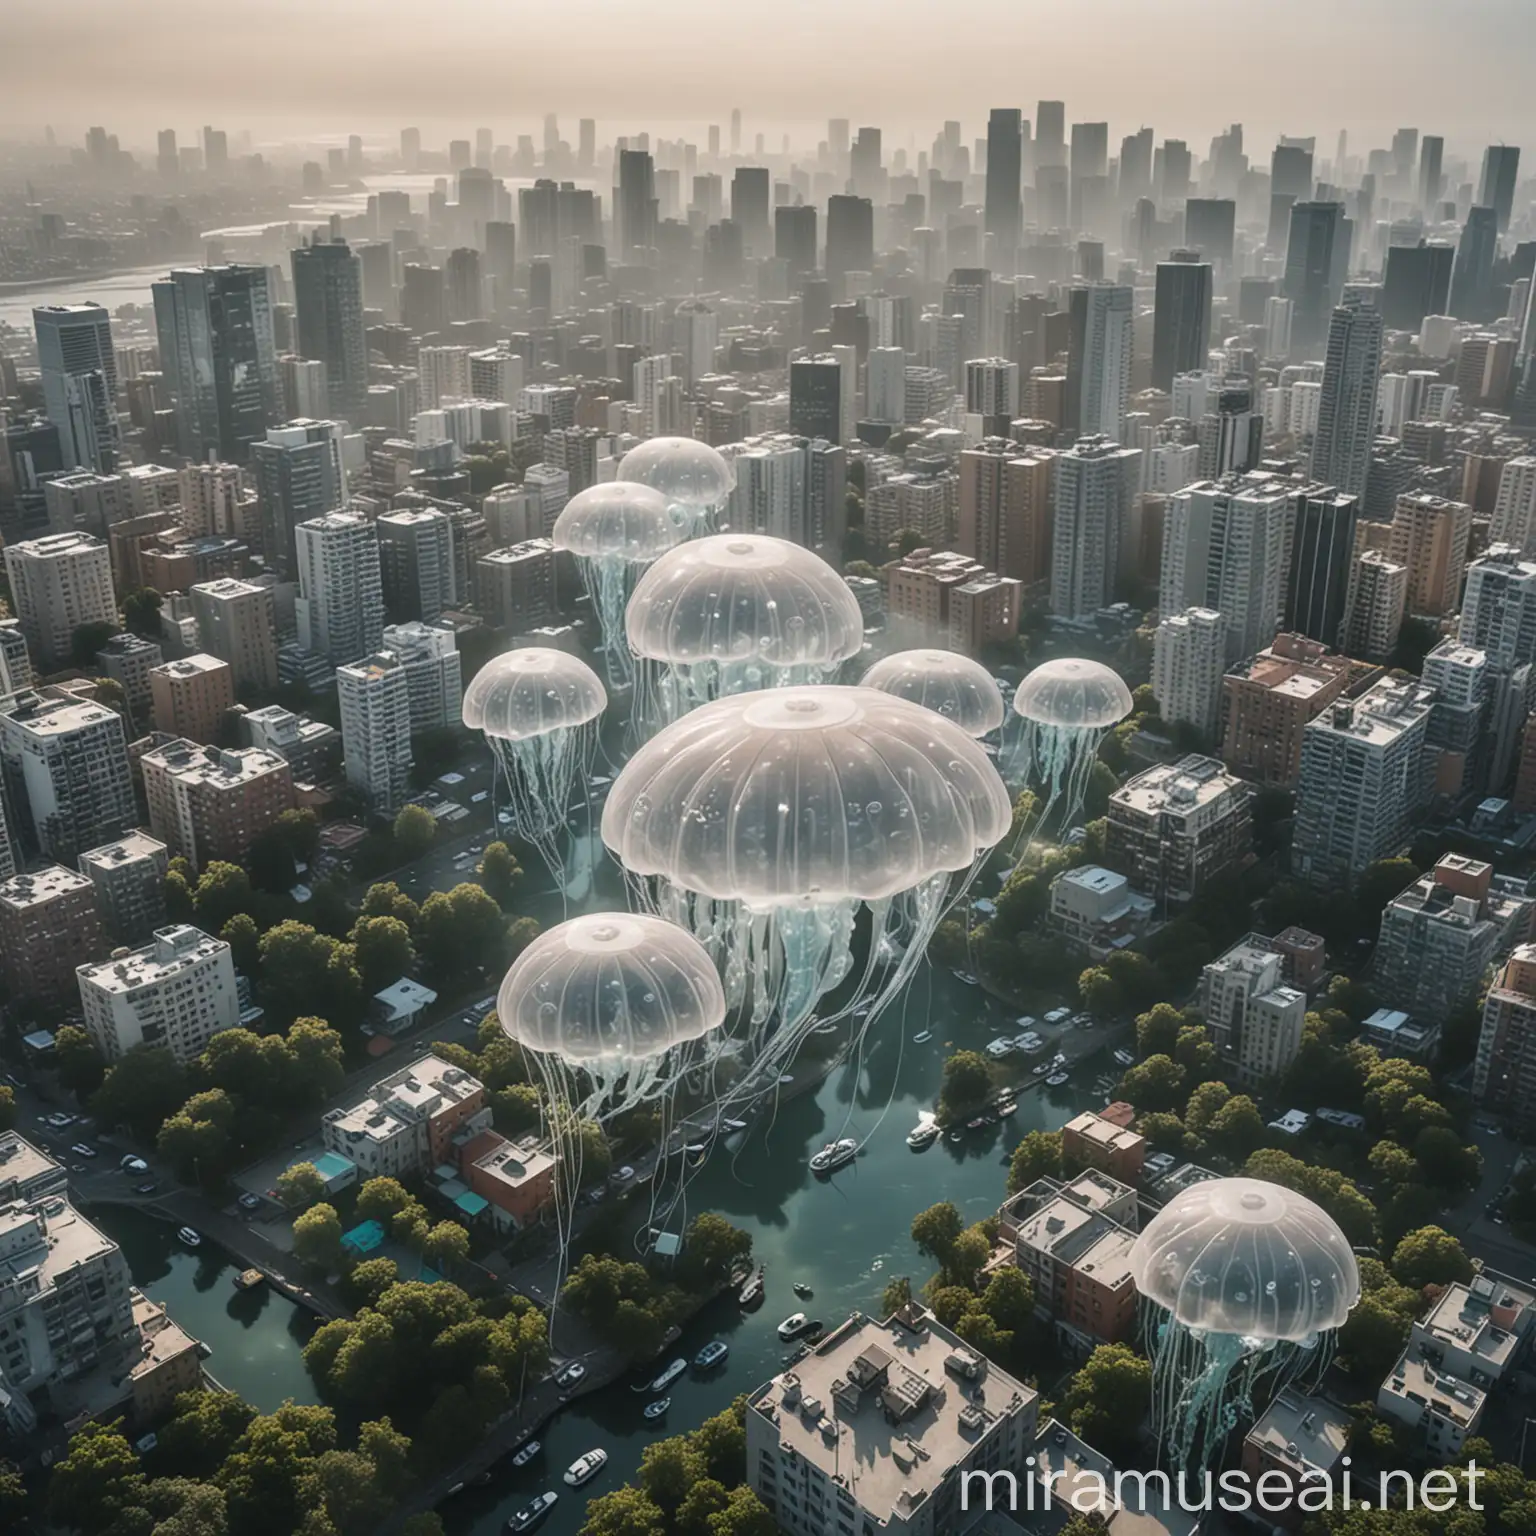 Una vista aérea de una ciudad con múltiples maquinas/drones en forma de medusas que purifican el aire flotando sobre los edificios. Las medusas tienen una estructura translúcida y luminosa, no son muy grandes y tienen tentáculos que se extienden suavemente mientras absorben smog y liberan oxígeno limpio. El cielo, previamente contaminado, comienza a aclararse. En el lado aclarado de la escena se ve un parque urbano con varias Medusas Purificadoras de Aire flotando entre los árboles. Los niños juegan y las familias disfrutan del aire fresco y limpio proporcionado por las medusas. El entorno natural y las medusas tecnológicas crean una escena de armonía entre naturaleza y tecnología. En el lado contaminado de la escena se ve todo mas gris.